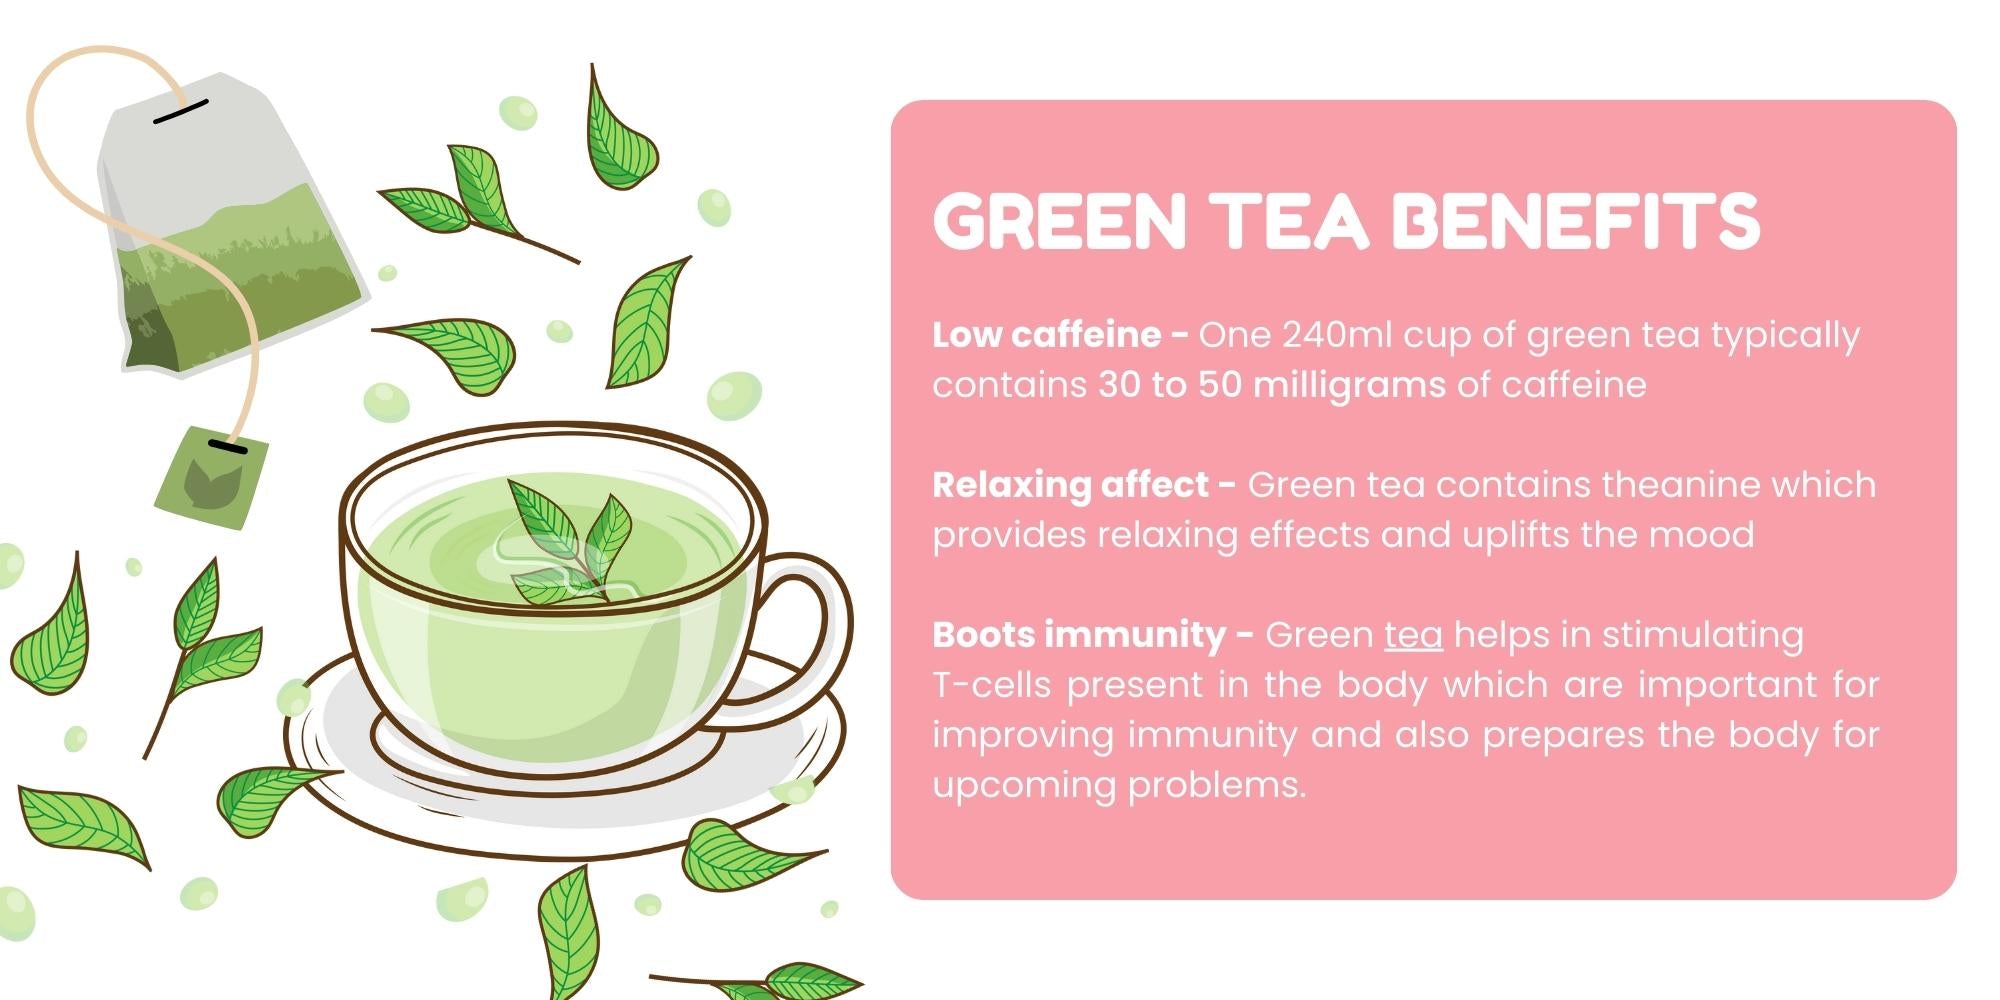 Green tea benefits in pregnancy